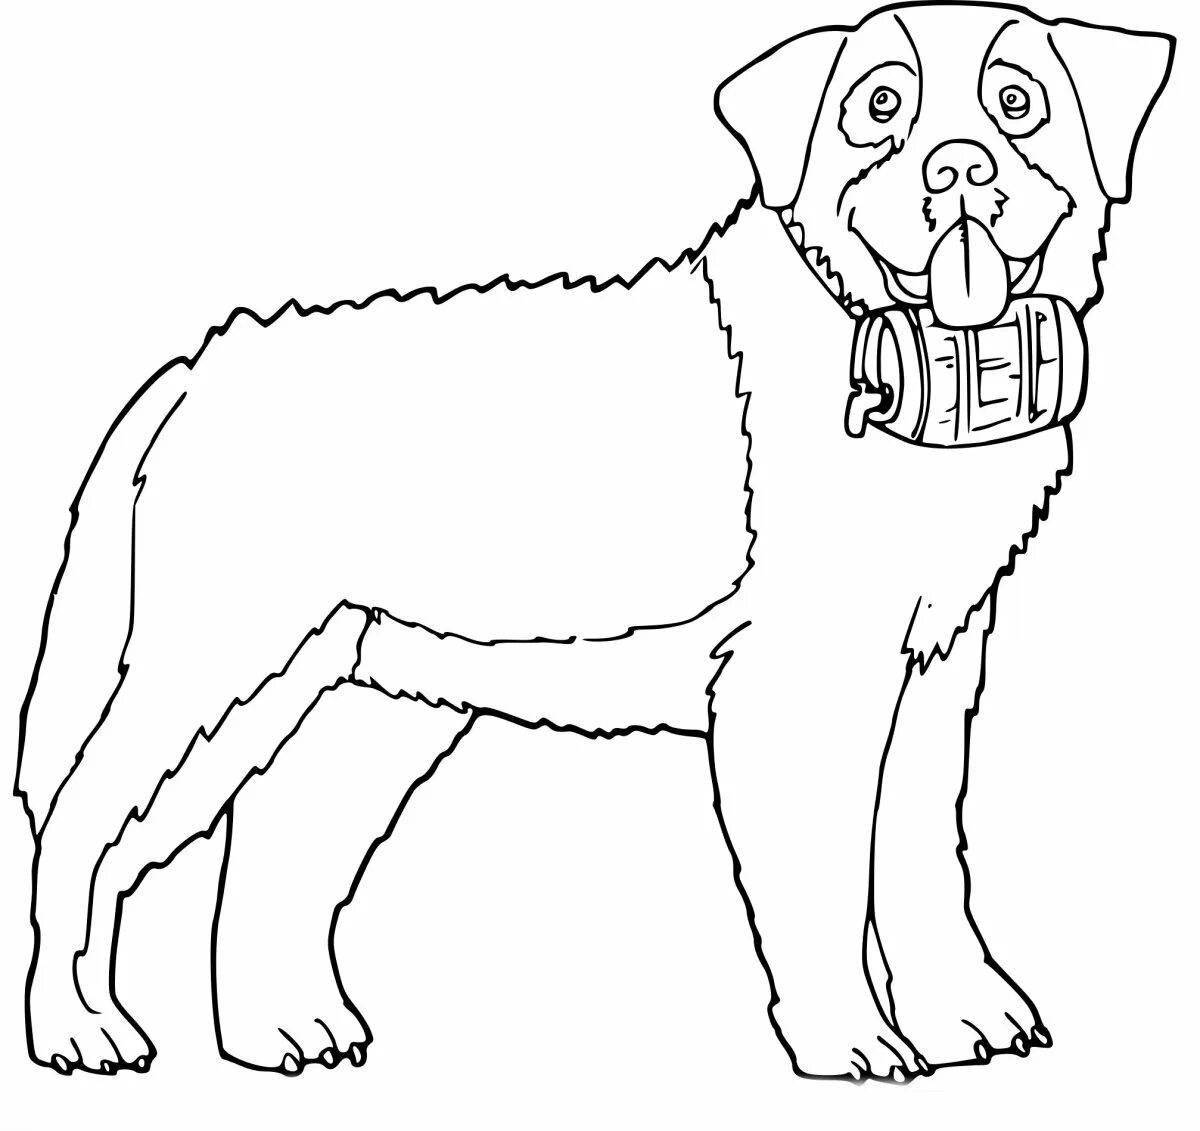 Изысканная раскраска собаки алабай